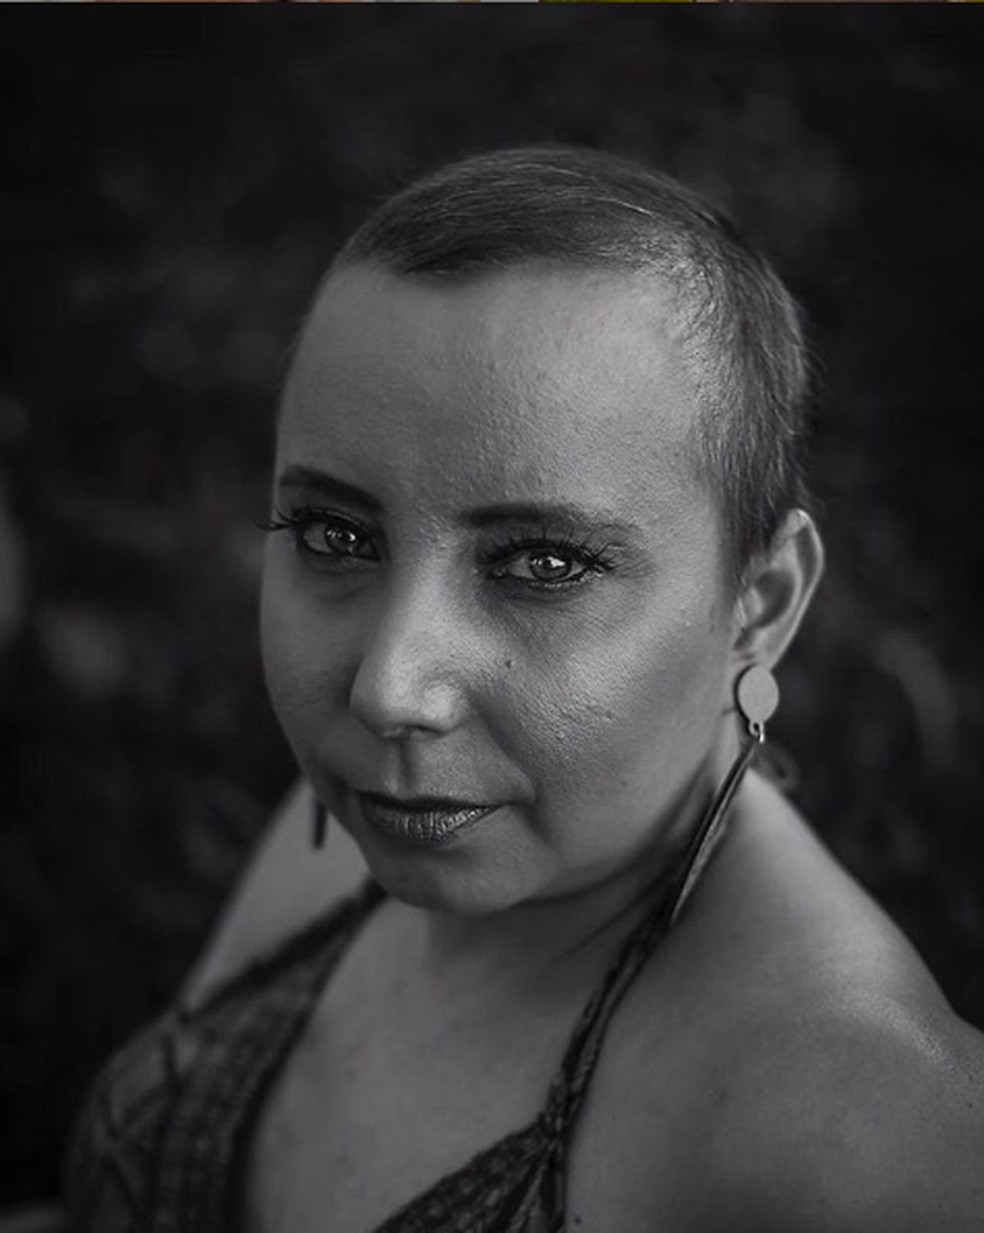 Jaqueline comemora a cura do câncer após 6 anos de tratamento em MS. — Foto: Alex Ruiz/Arquivo pessoal